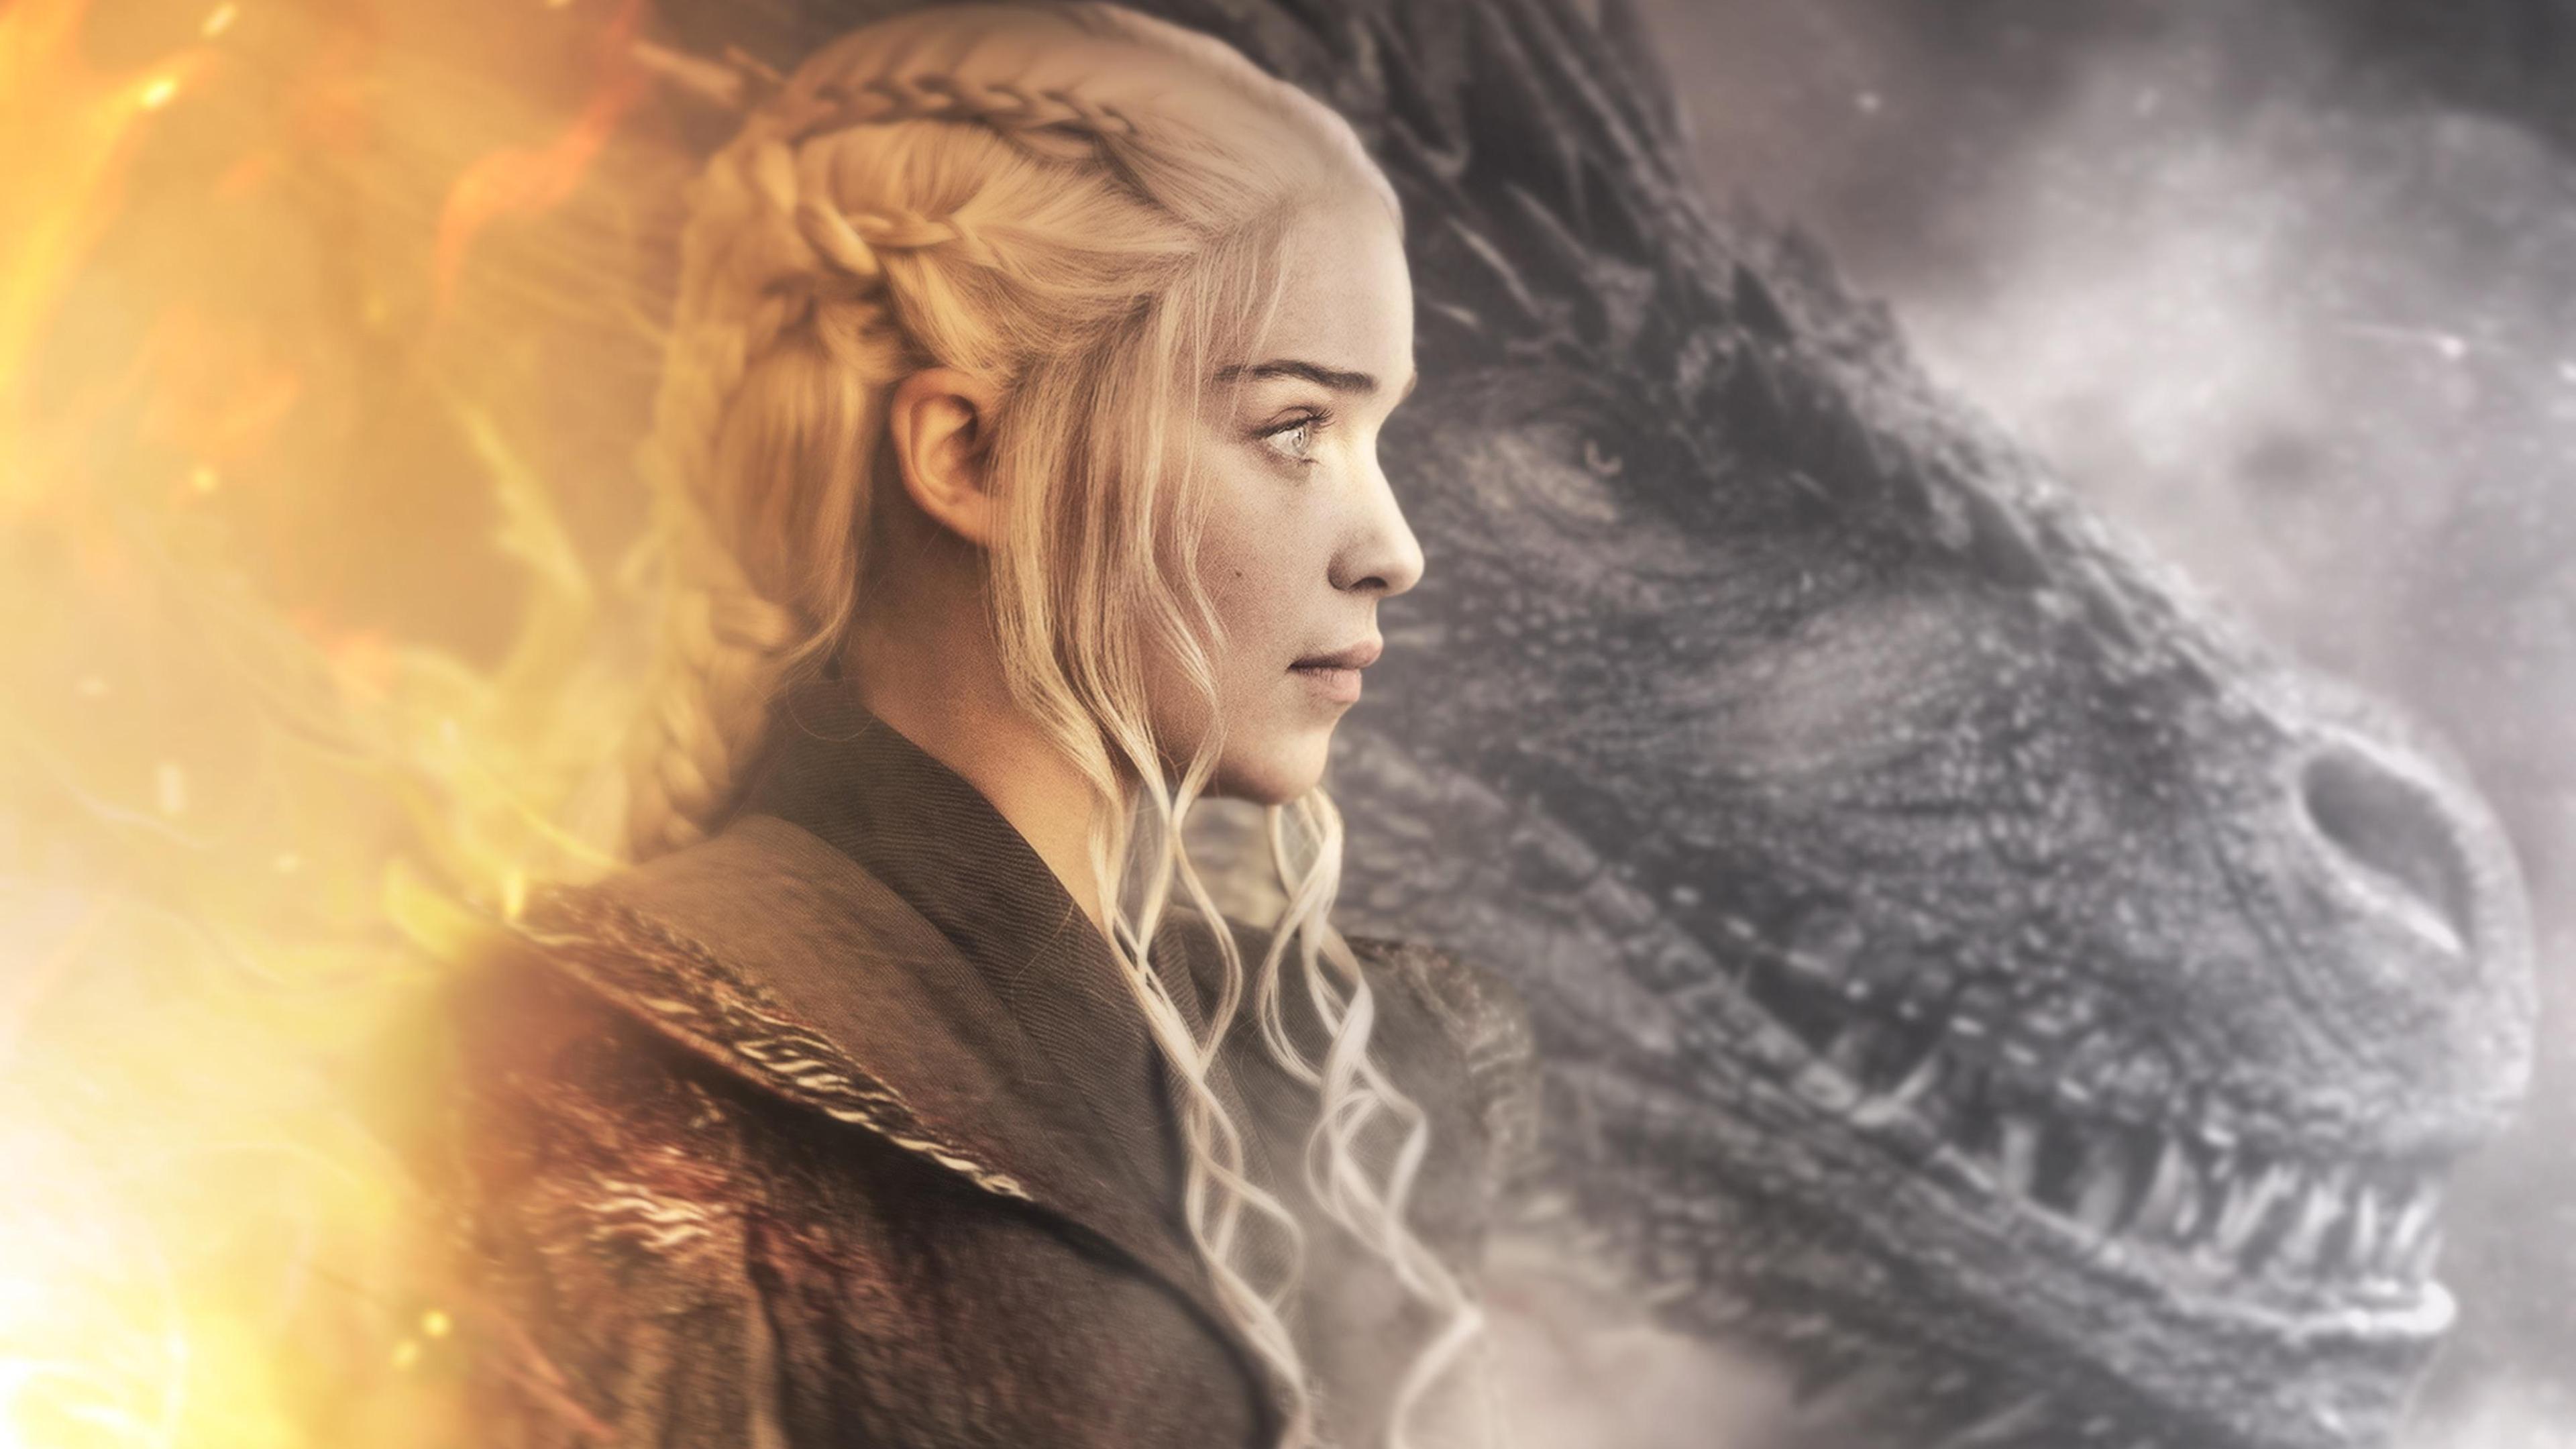 Daenerys Targaryen Dragon in Game of Thrones 4K Wallpaper. HD